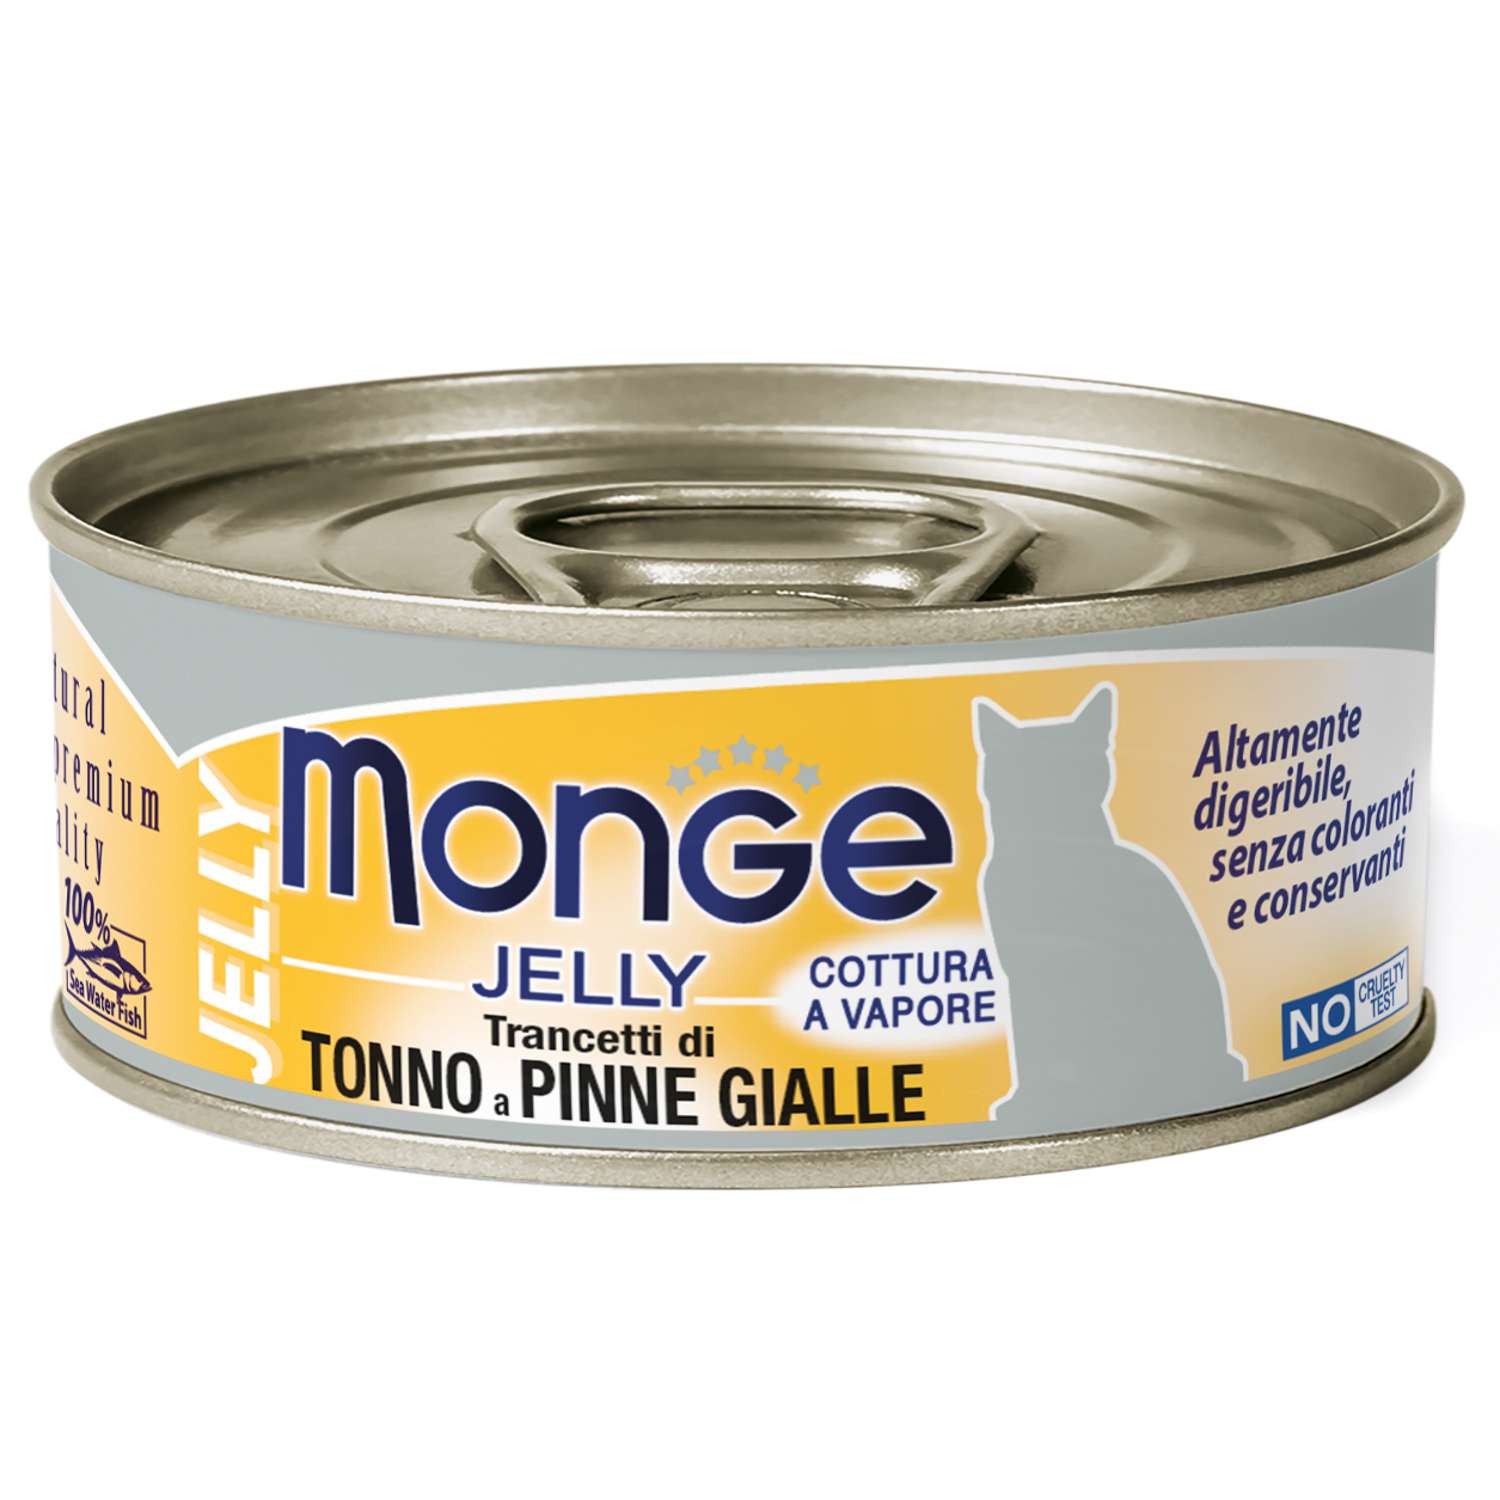 Корм для кошек Monge 80г с желтоперым тунцом консервы - фото 1